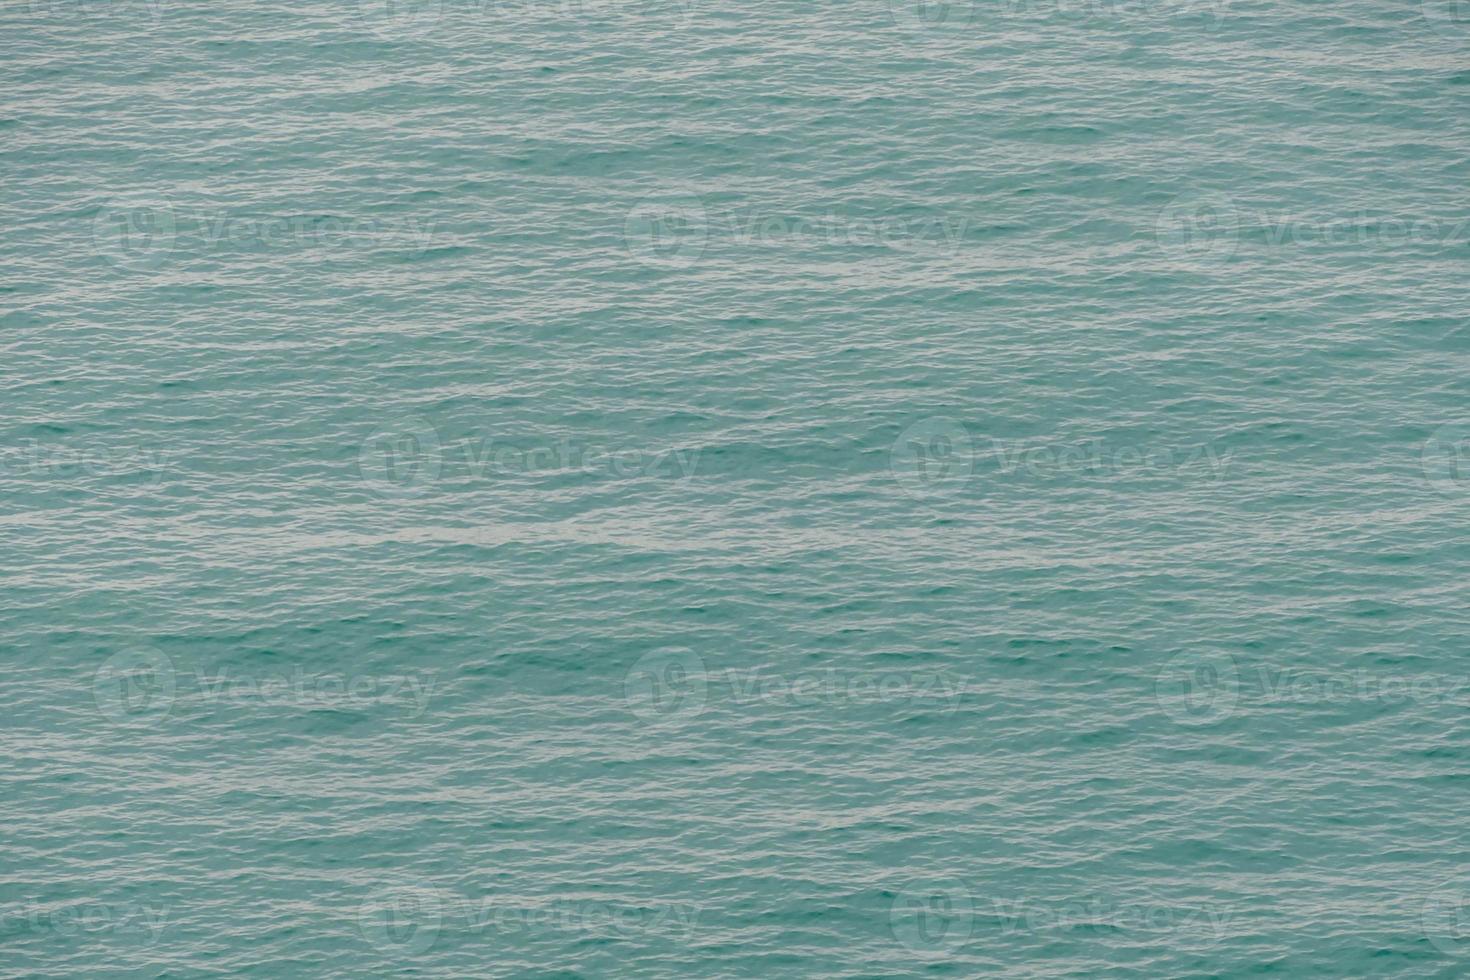 vagues dans l'eau photo